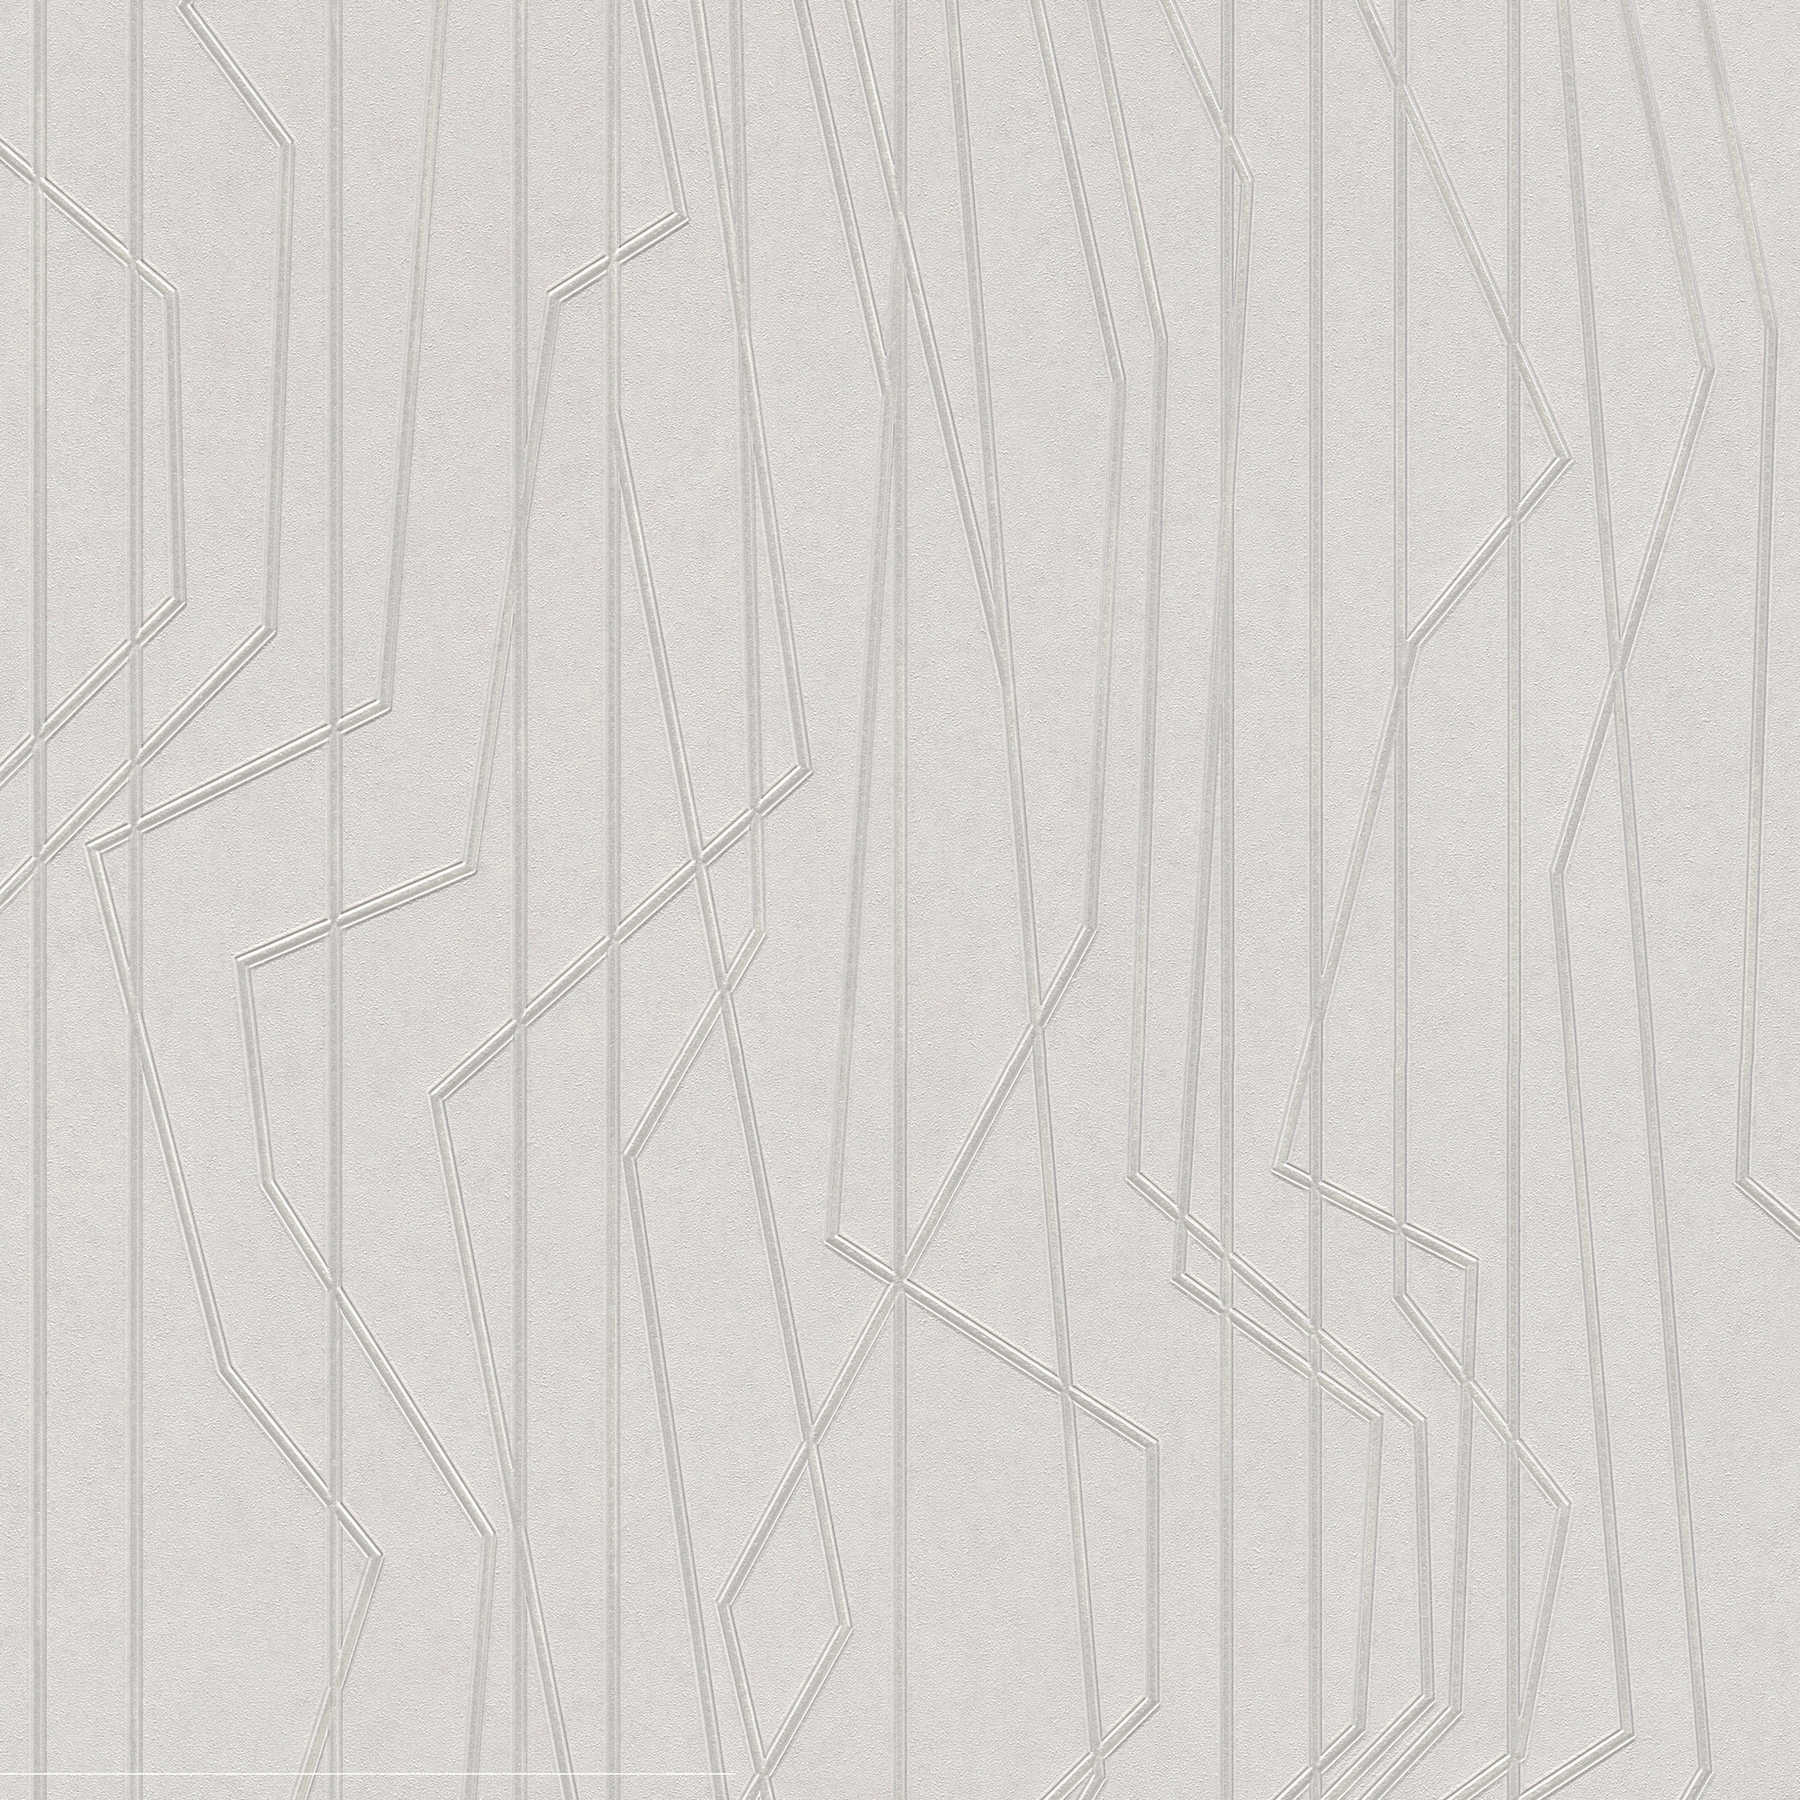         Papier peint à motifs géométriques & effet métallique - gris
    